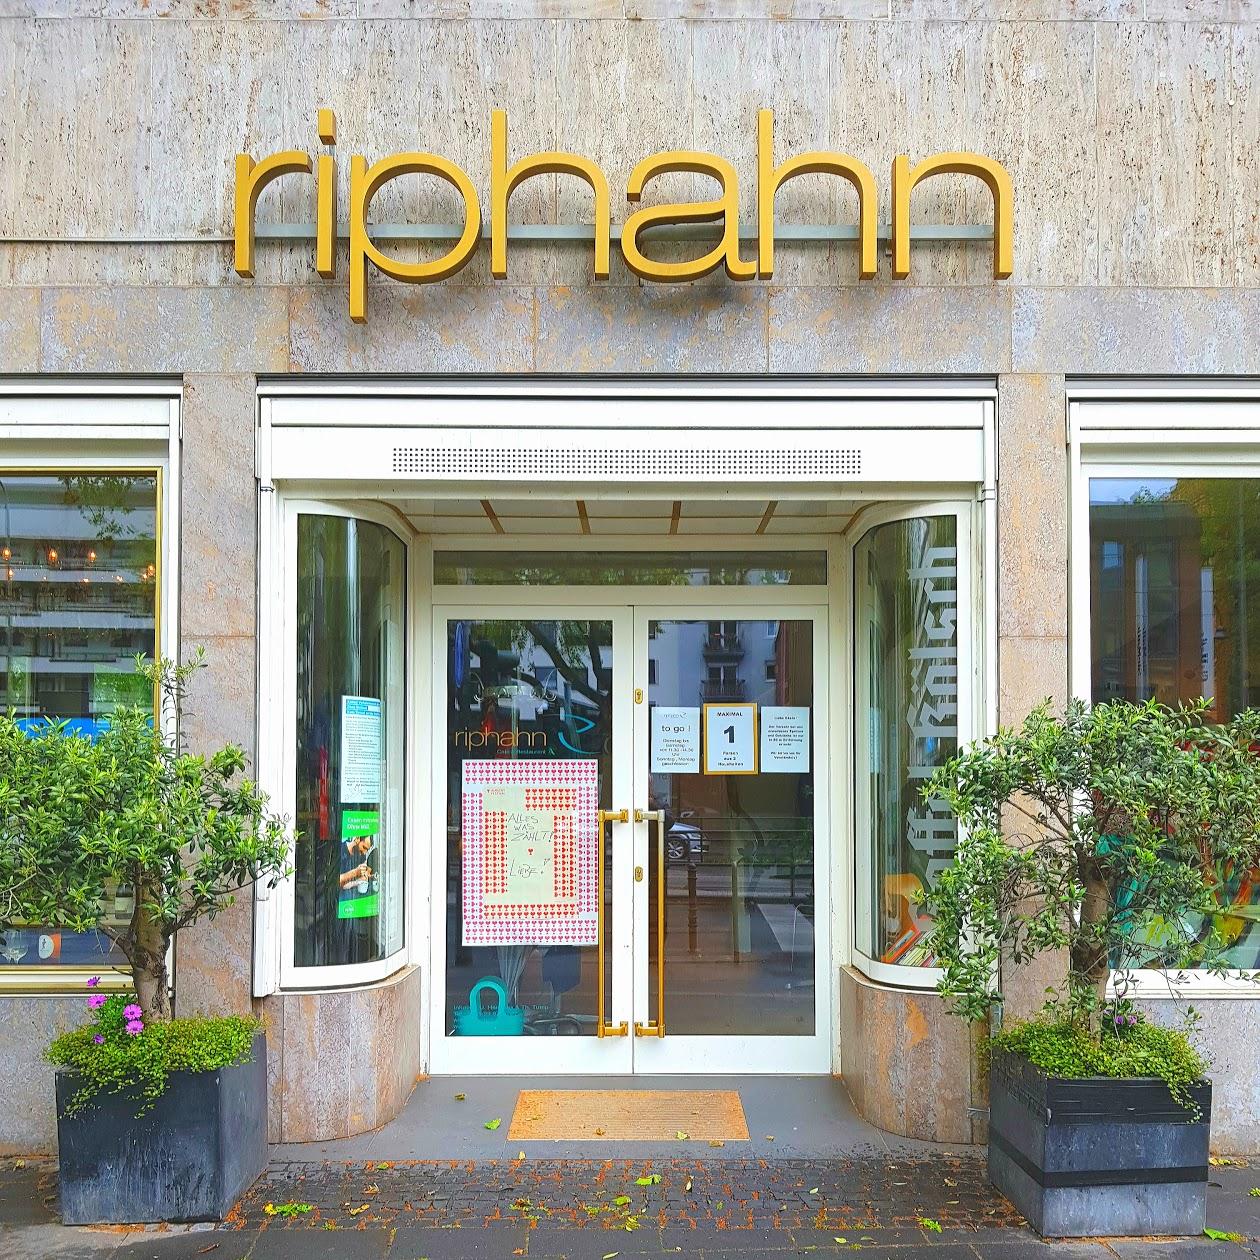 Restaurant "Riphahn Café & Restaurant" in Köln